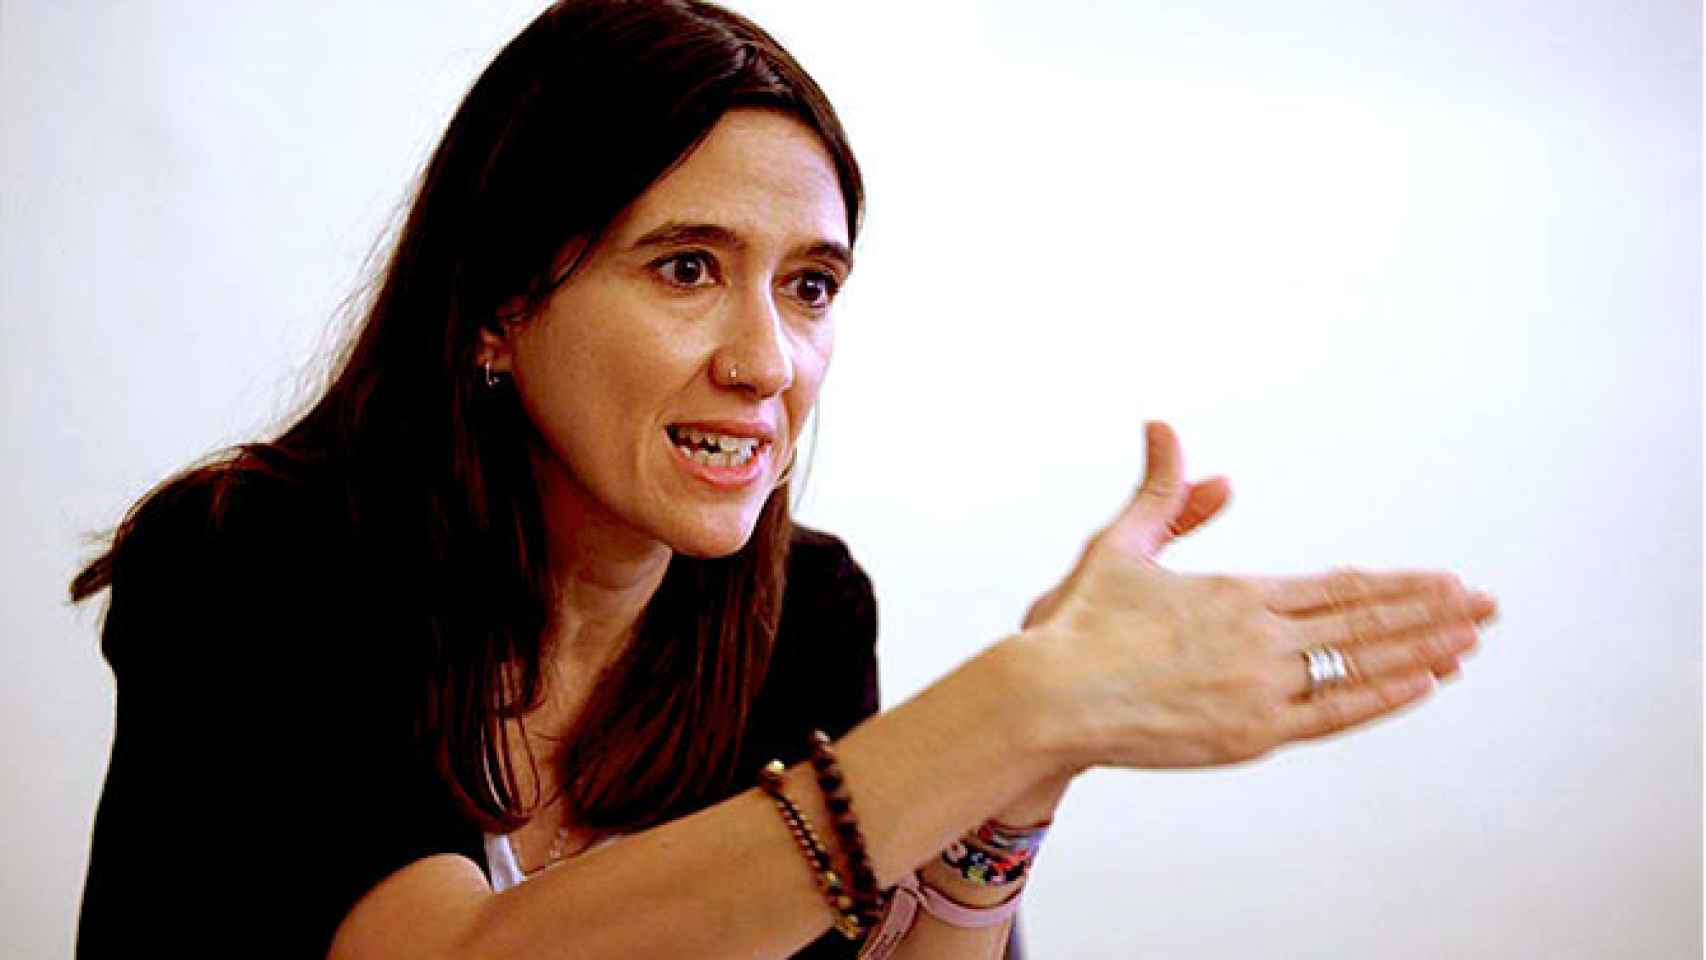 Núria Parlon, alcaldesa de Santa Coloma de Gramenet / CG